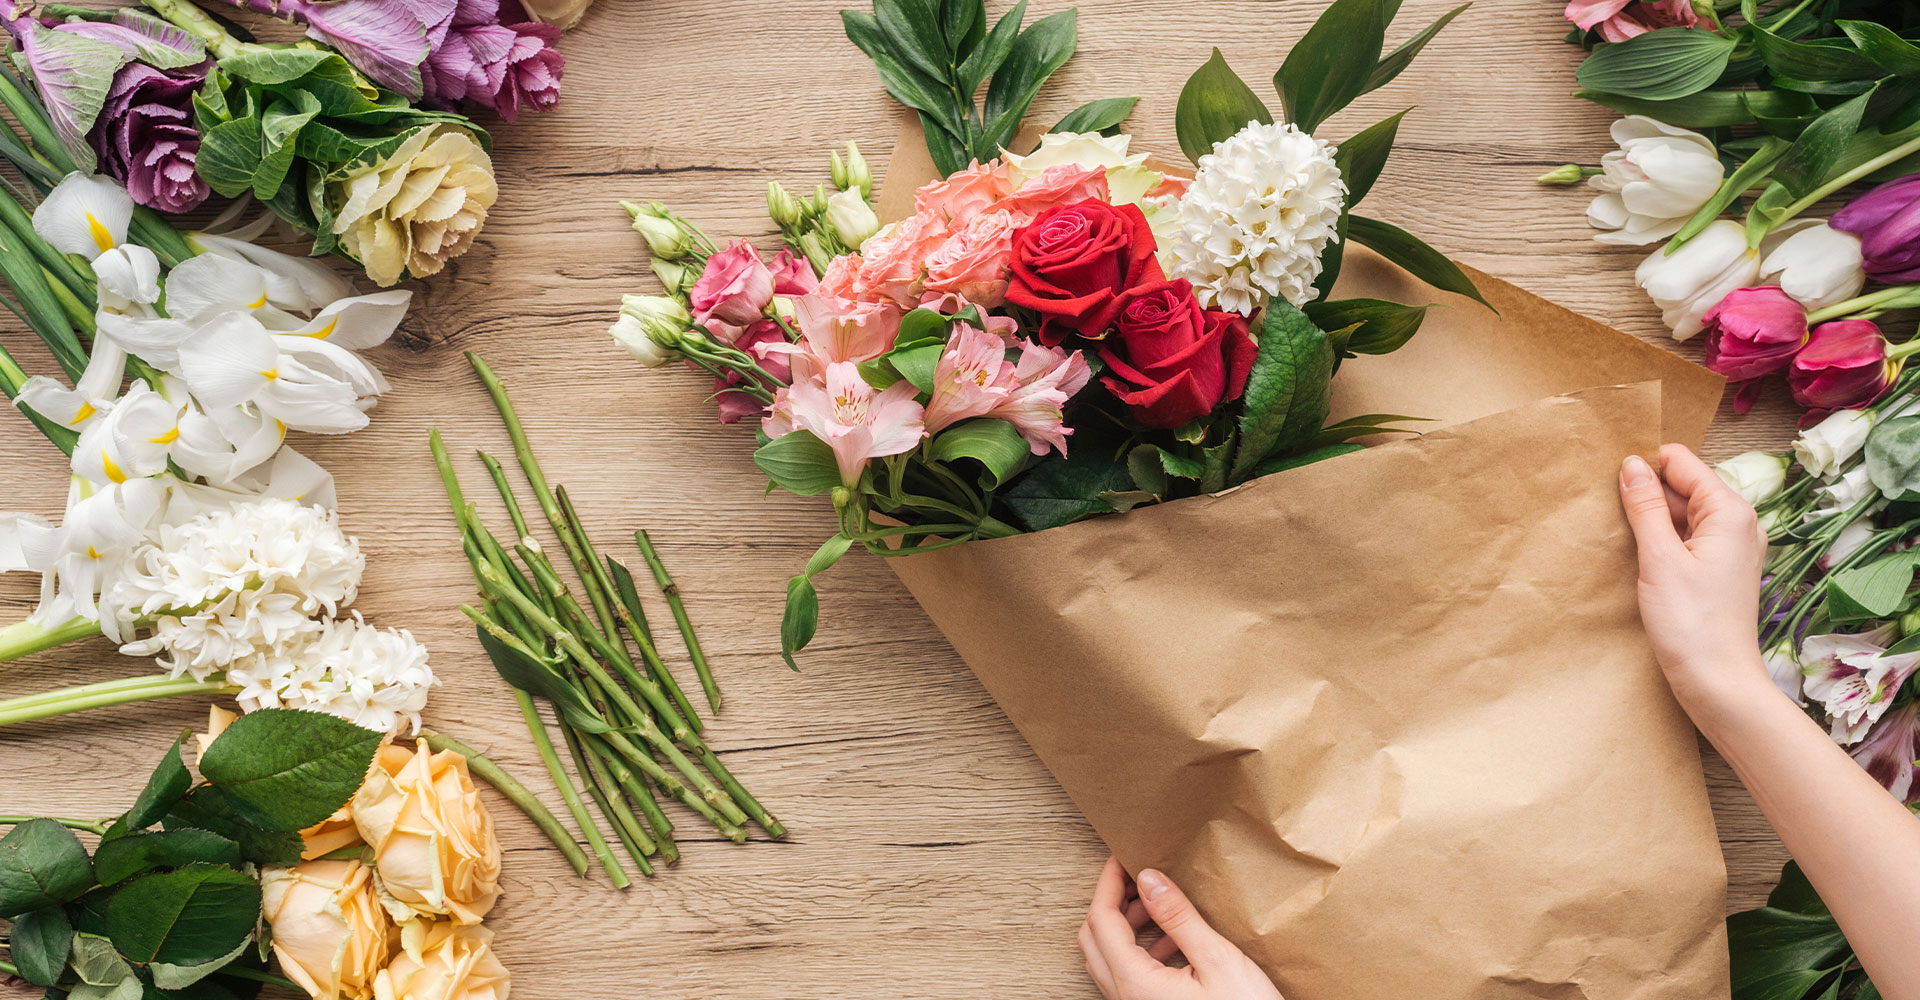 Auf einem Arbeitstisch liegen verschiedene Blumen. Ein Blumenstrauß wird gerade eingepackt.